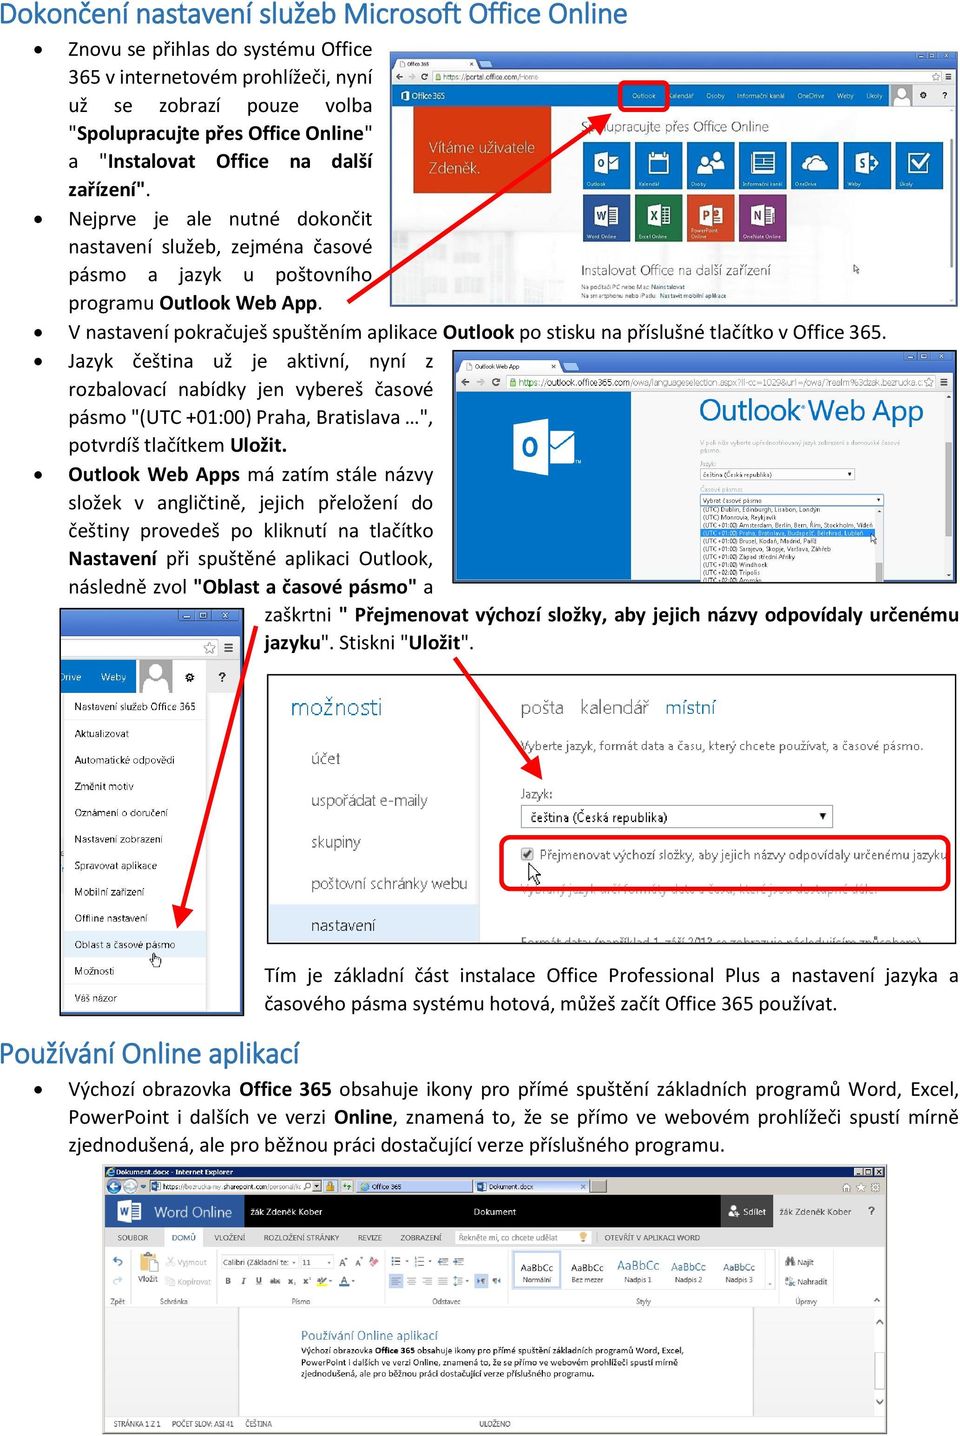 V nastavení pokračuješ spuštěním aplikace Outlook po stisku na příslušné tlačítko v Office 365.